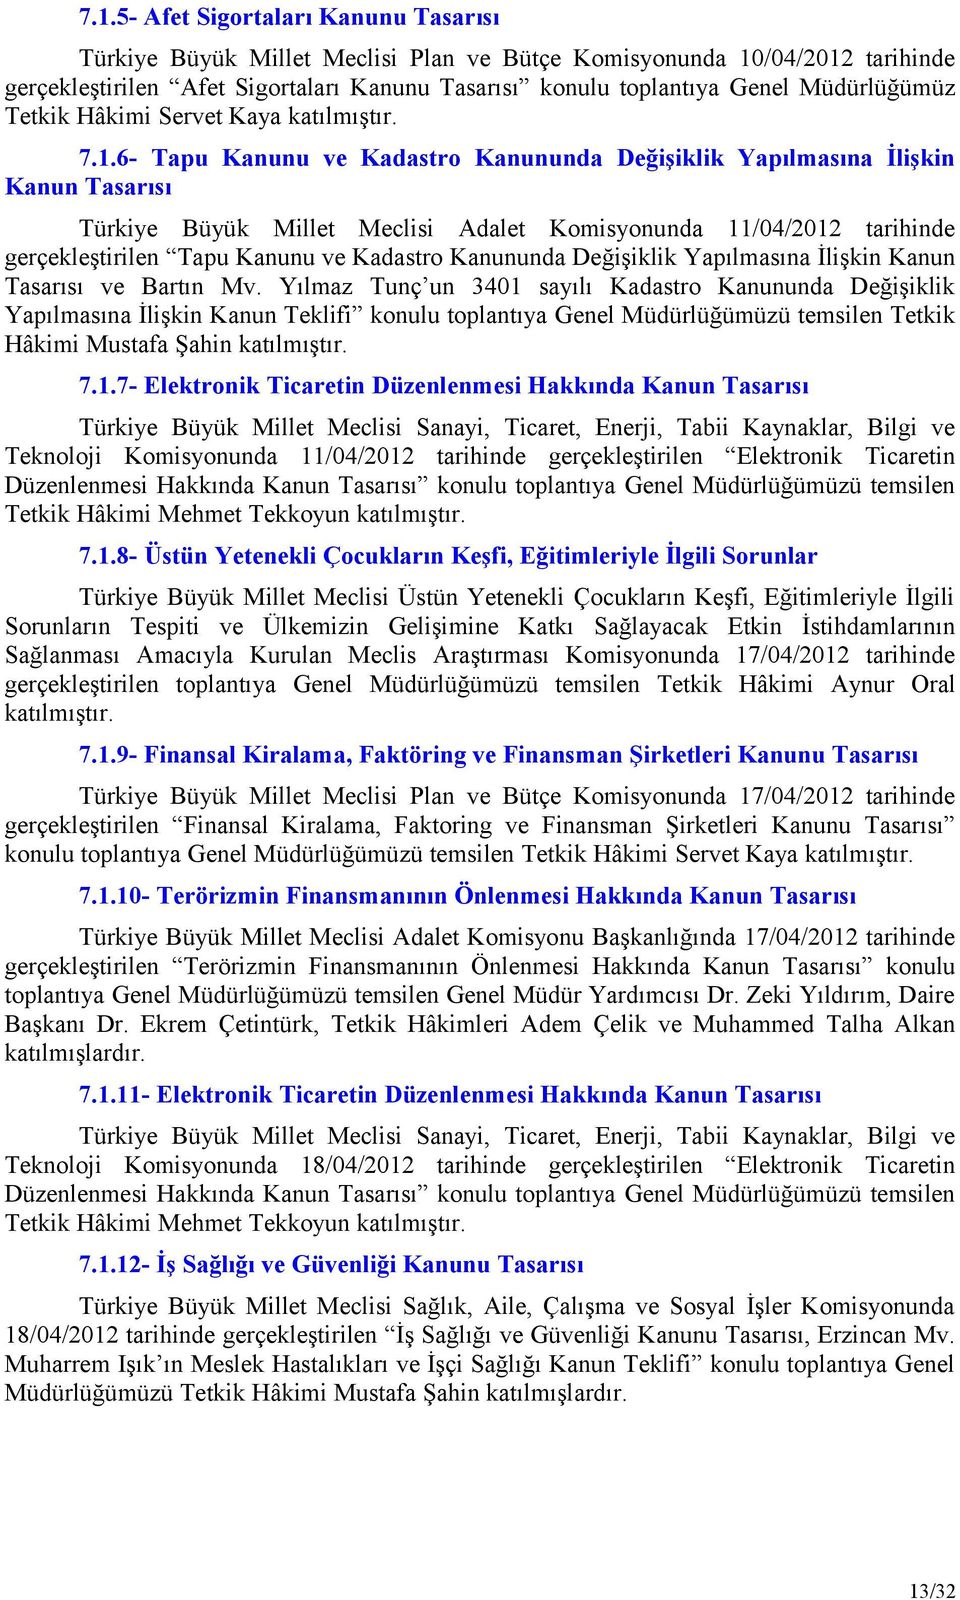 6- Tapu Kanunu ve Kadastro Kanununda Değişiklik Yapılmasına İlişkin Kanun Tasarısı Türkiye Büyük Millet Meclisi Adalet Komisyonunda 11/04/2012 tarihinde gerçekleştirilen Tapu Kanunu ve Kadastro